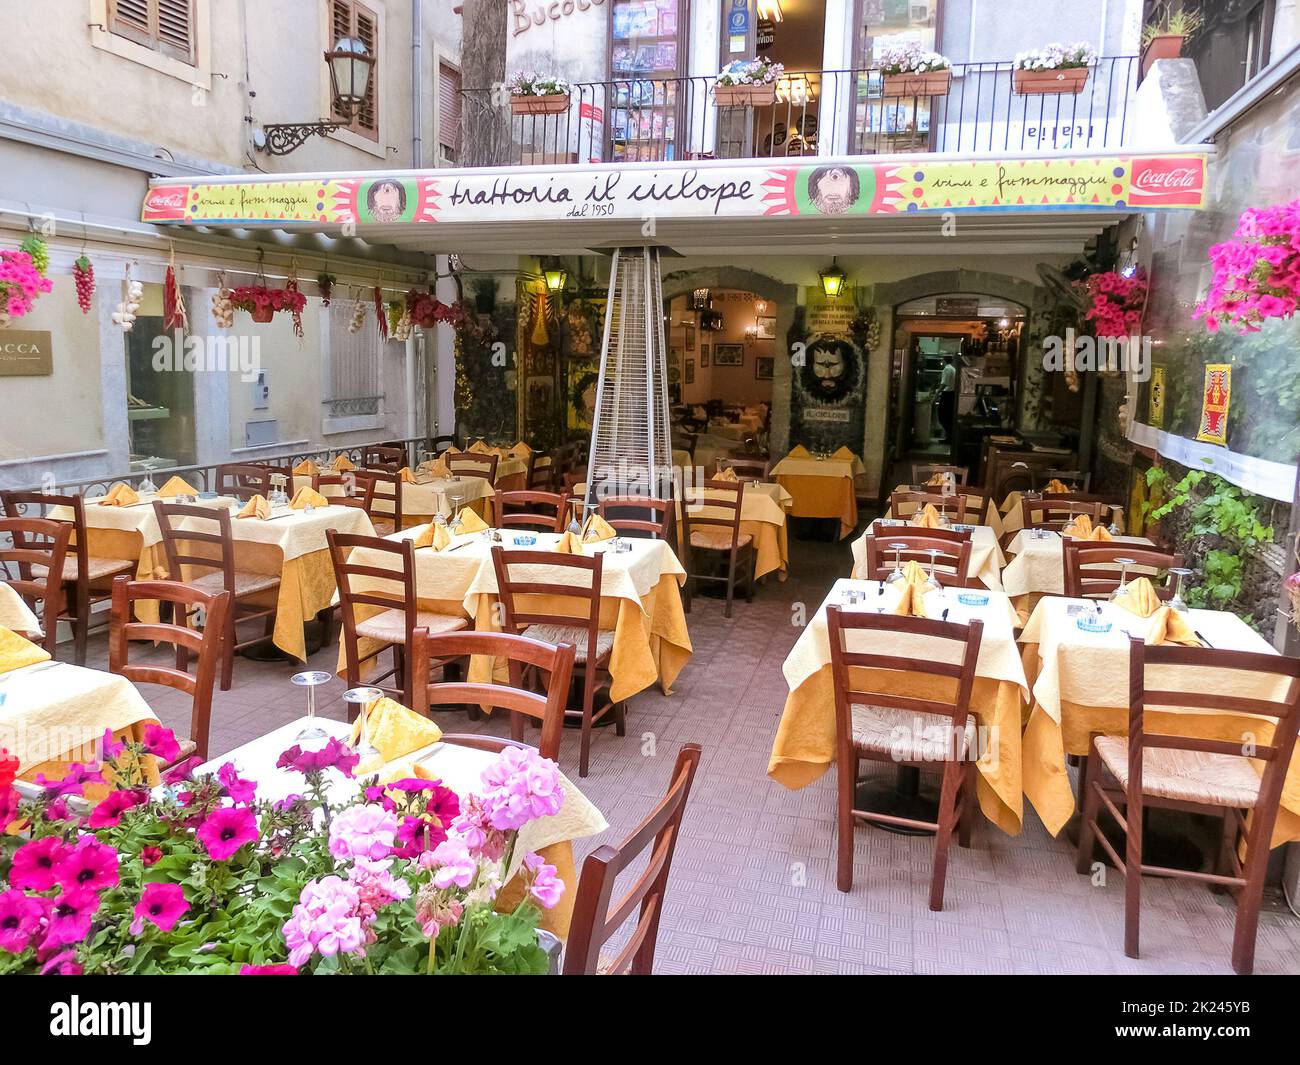 Taormina, Sicily, Italy - May 05, 2014: Luxury Il Gattopardo Restaurant in the beautiful town Taormina, Sicily, Italy Stock Photo